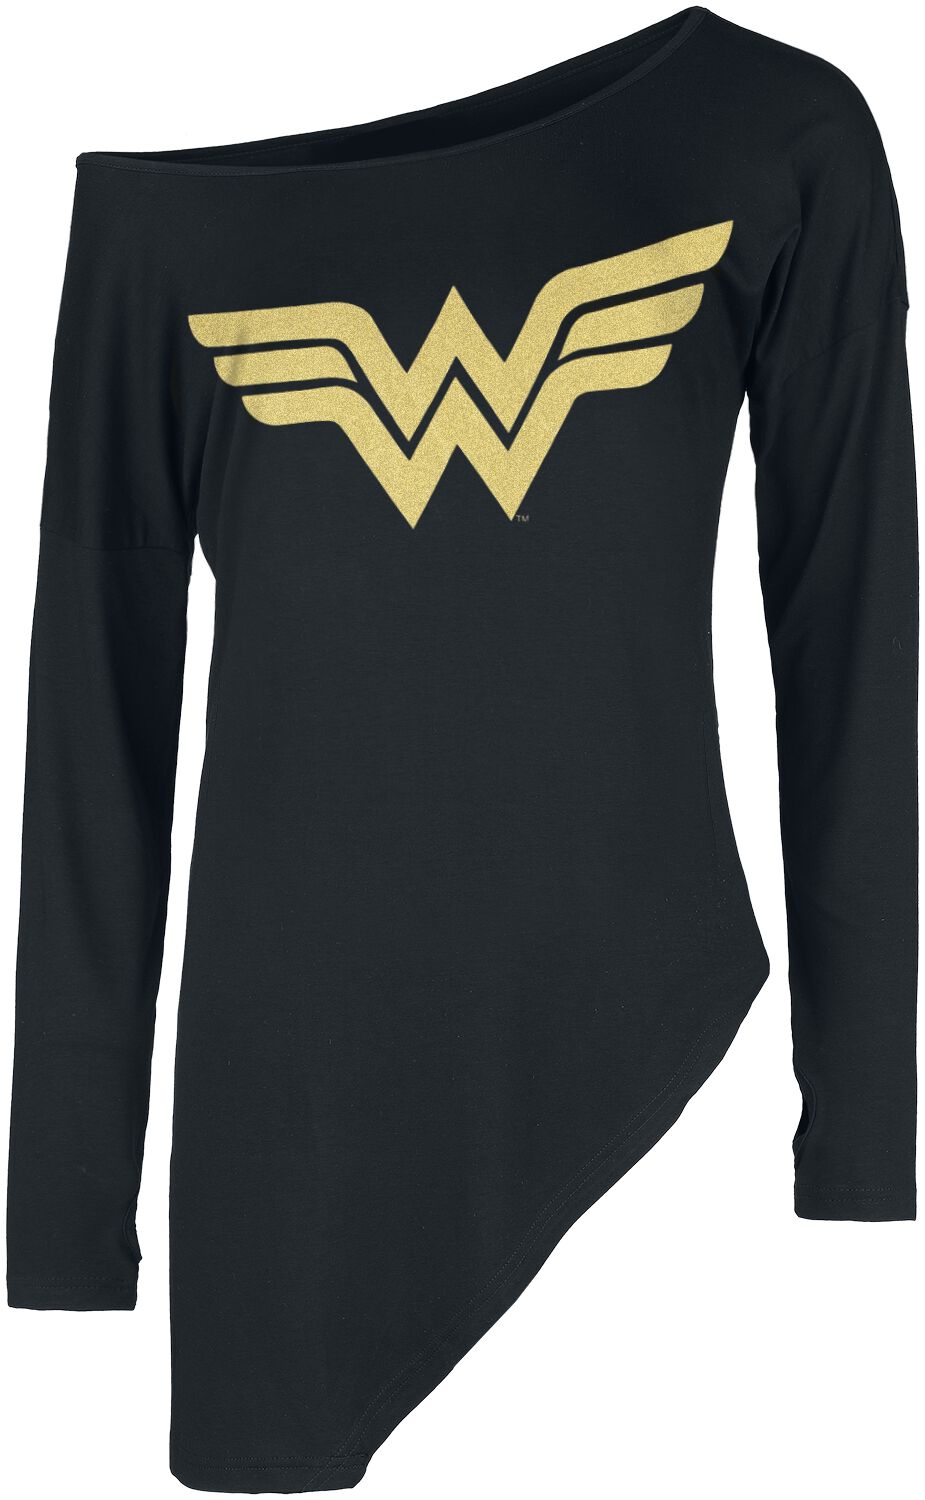 T-shirt manches longues de Wonder Woman - Symbole Doré - S à XXL - pour Femme - noir